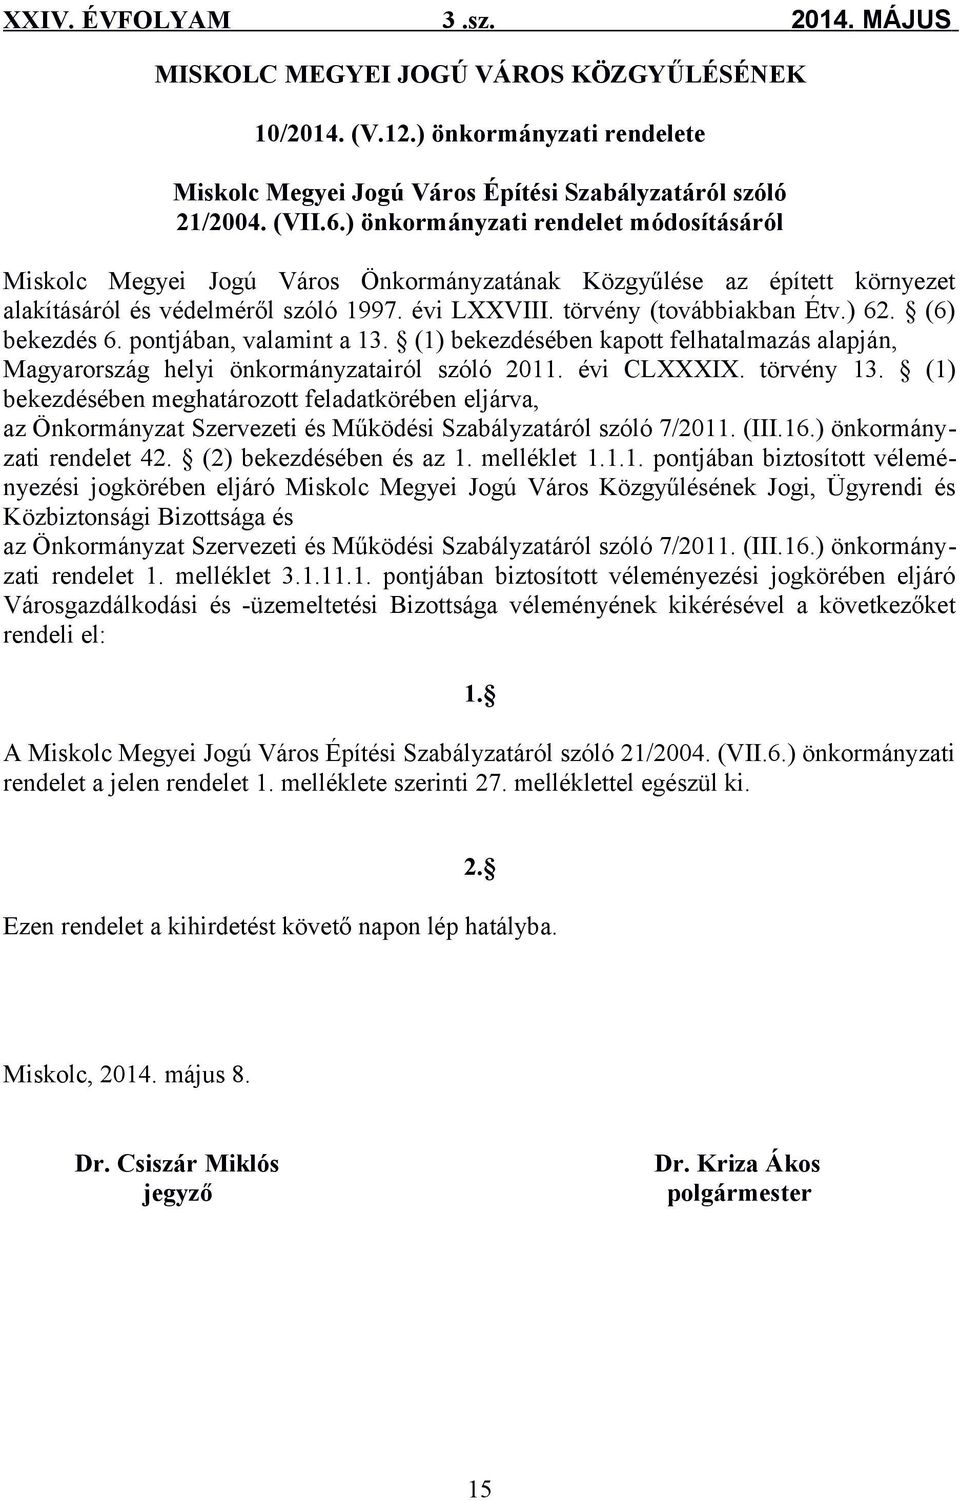 (6) bekezdés 6. pontjában, valamint a 13. (1) bekezdésében kapott felhatalmazás alapján, Magyarország helyi önkormányzatairól szóló 2011. évi CLXXXIX. törvény 13.